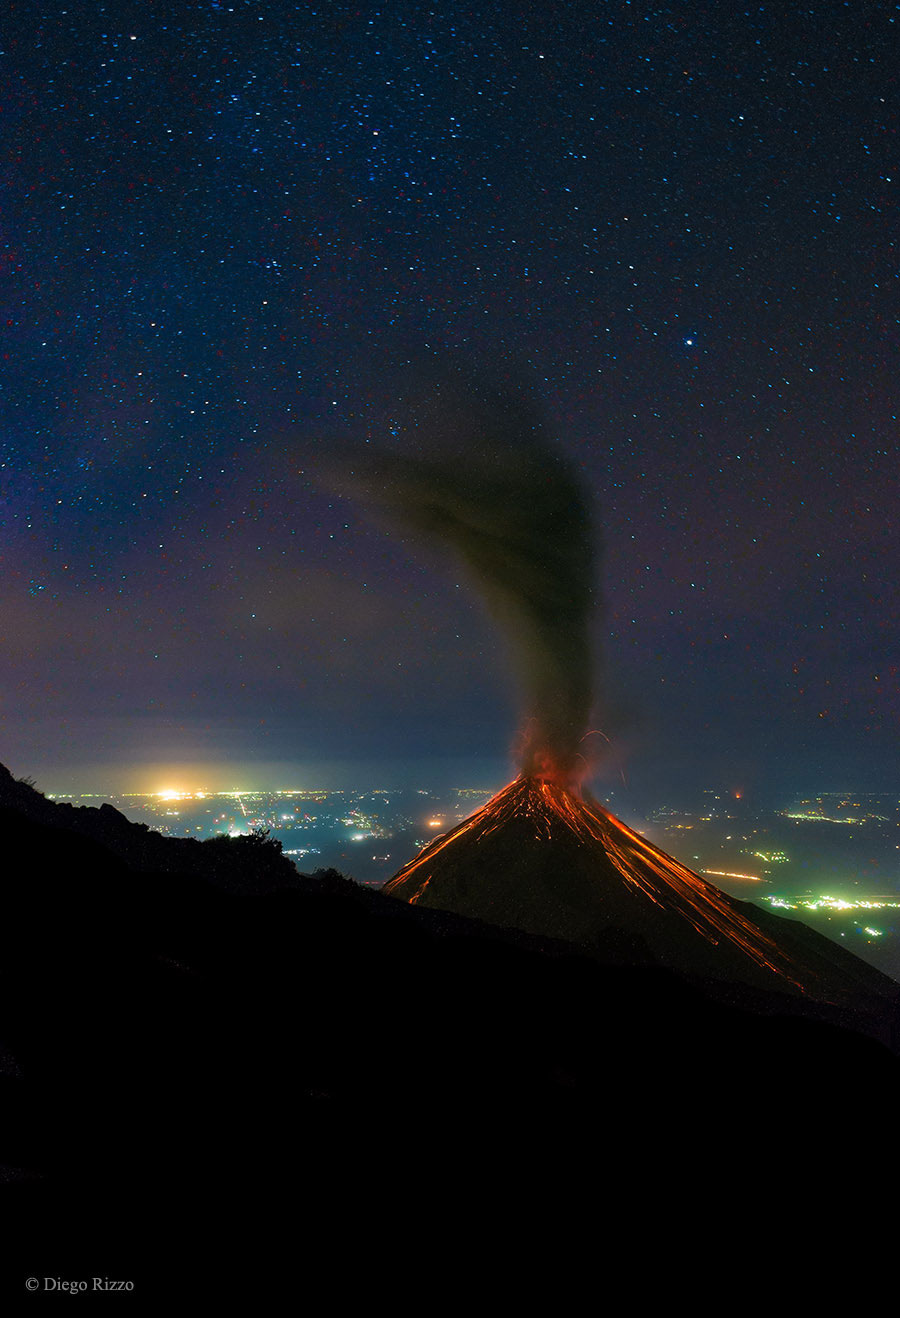 Volcán de lume en erupción baixo as estrelas